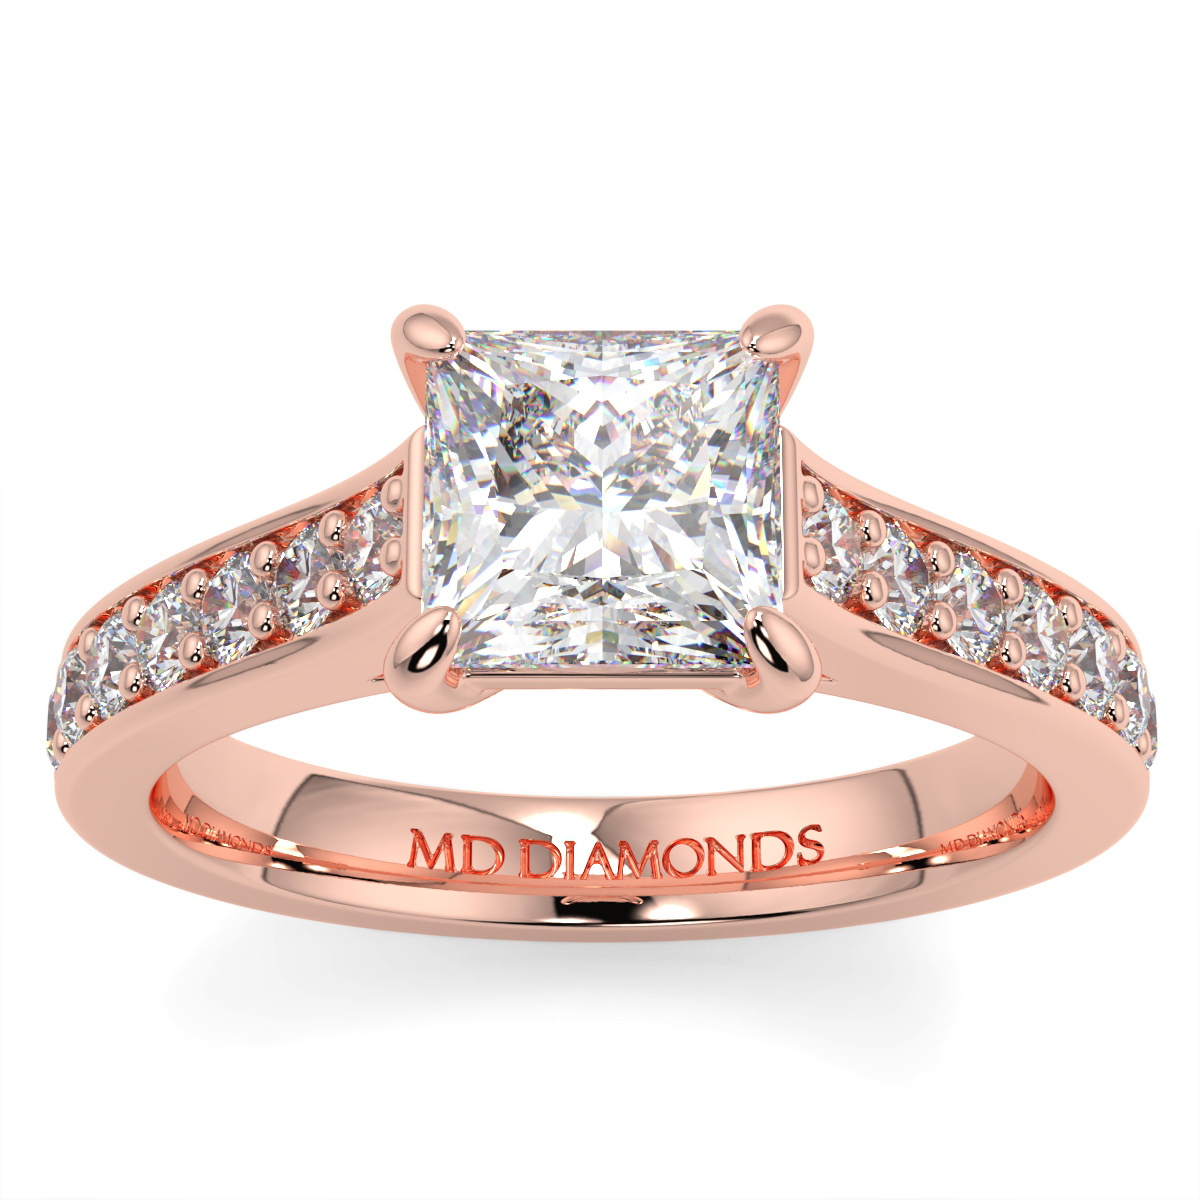 Princess Pave Set Diamond Ring